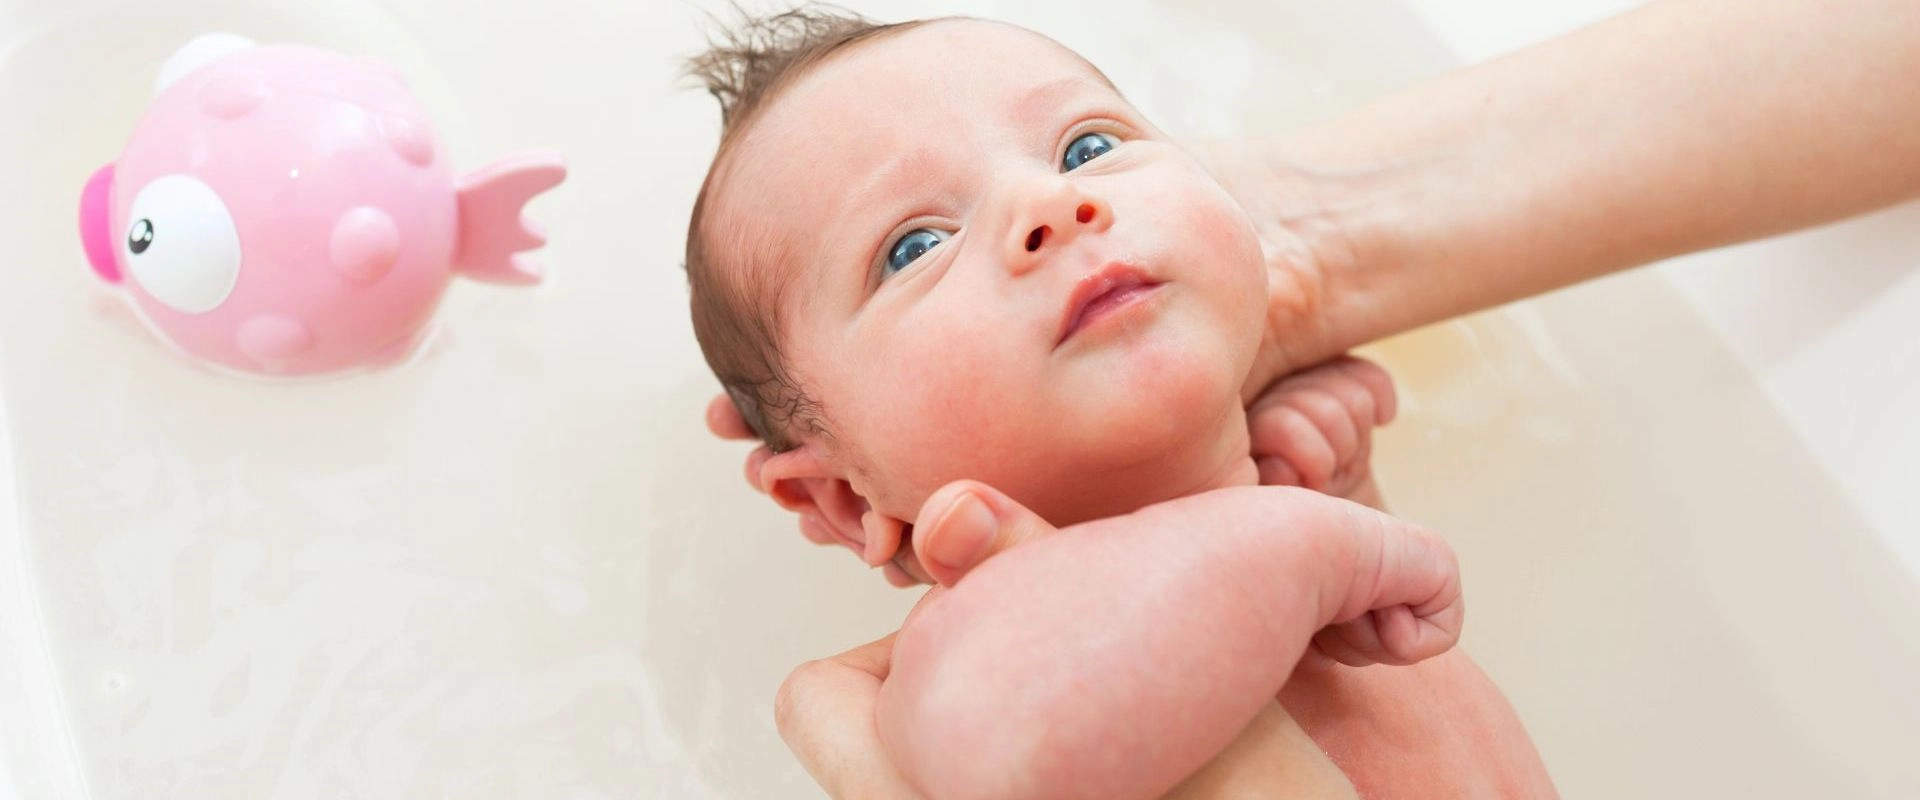 Primo bagnetto del neonato, le 5 cose da sapere